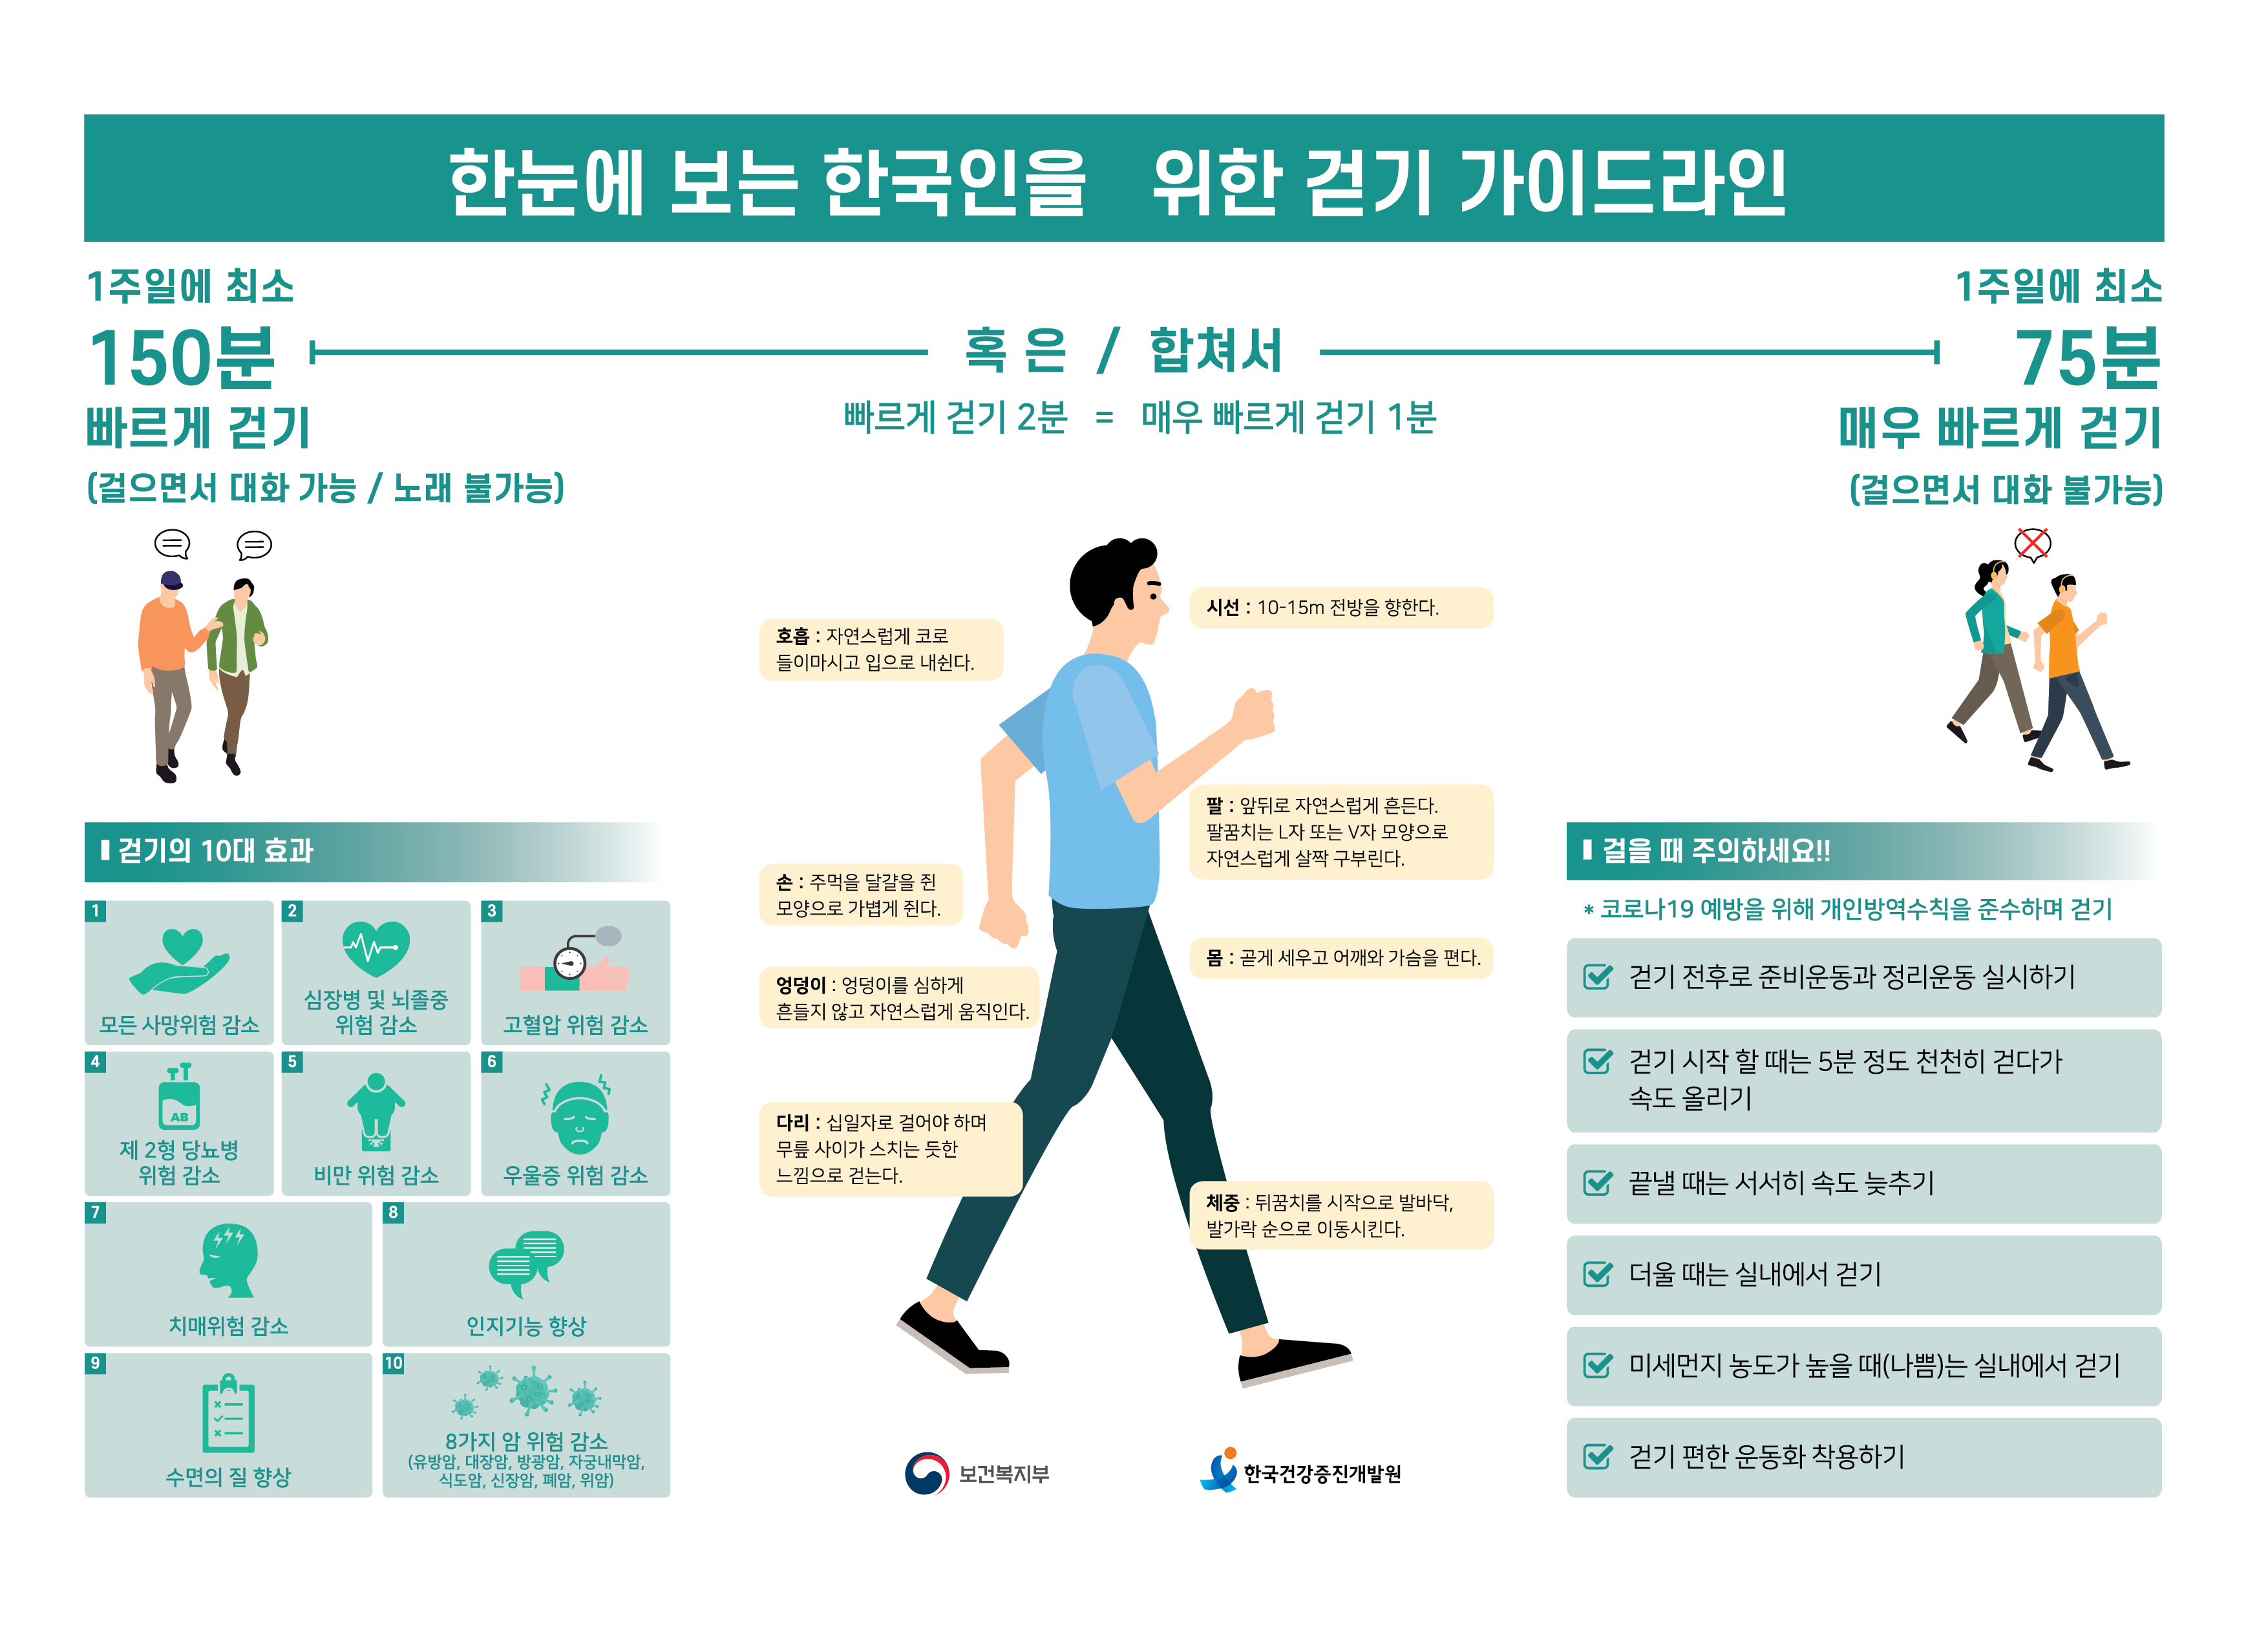 자료출처: 한국건강증진개발원